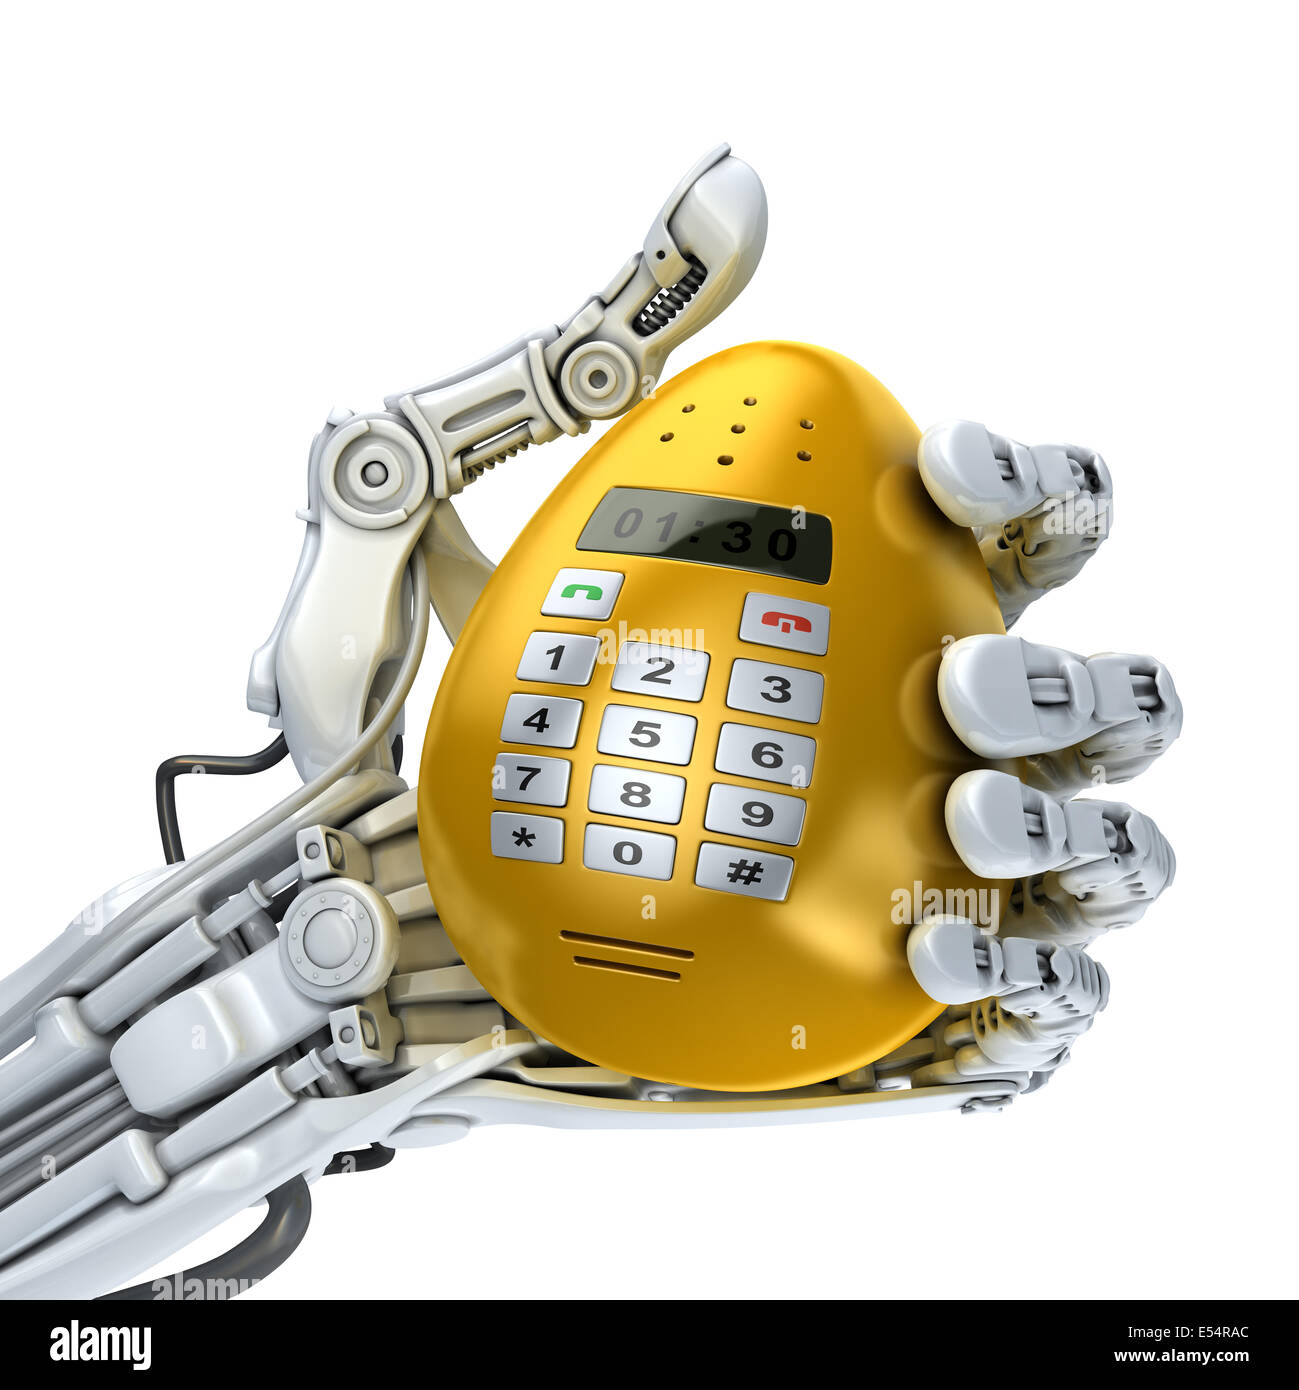 Robot holds fantasy golden egg phone. Easter 3d illustration Stock Photo